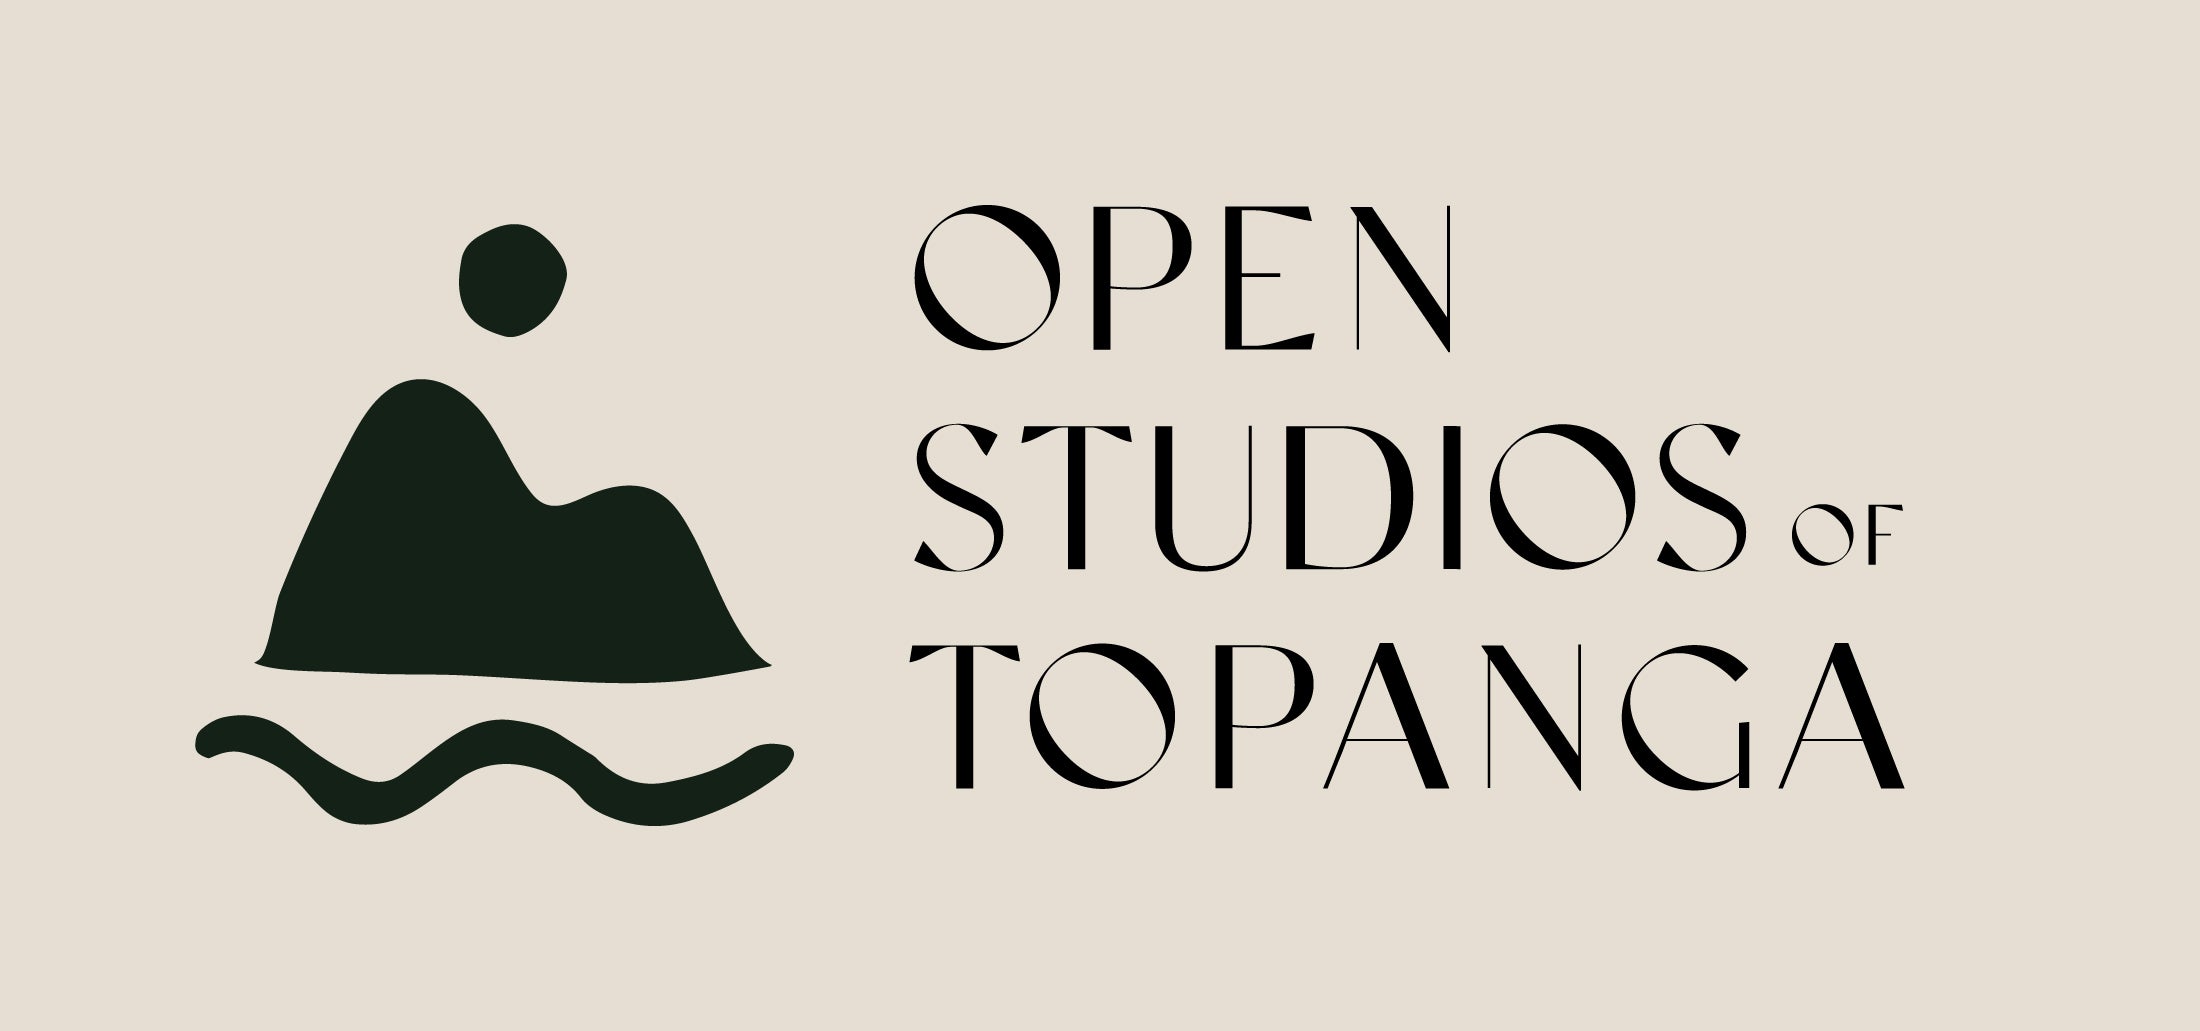 Topanga Studios